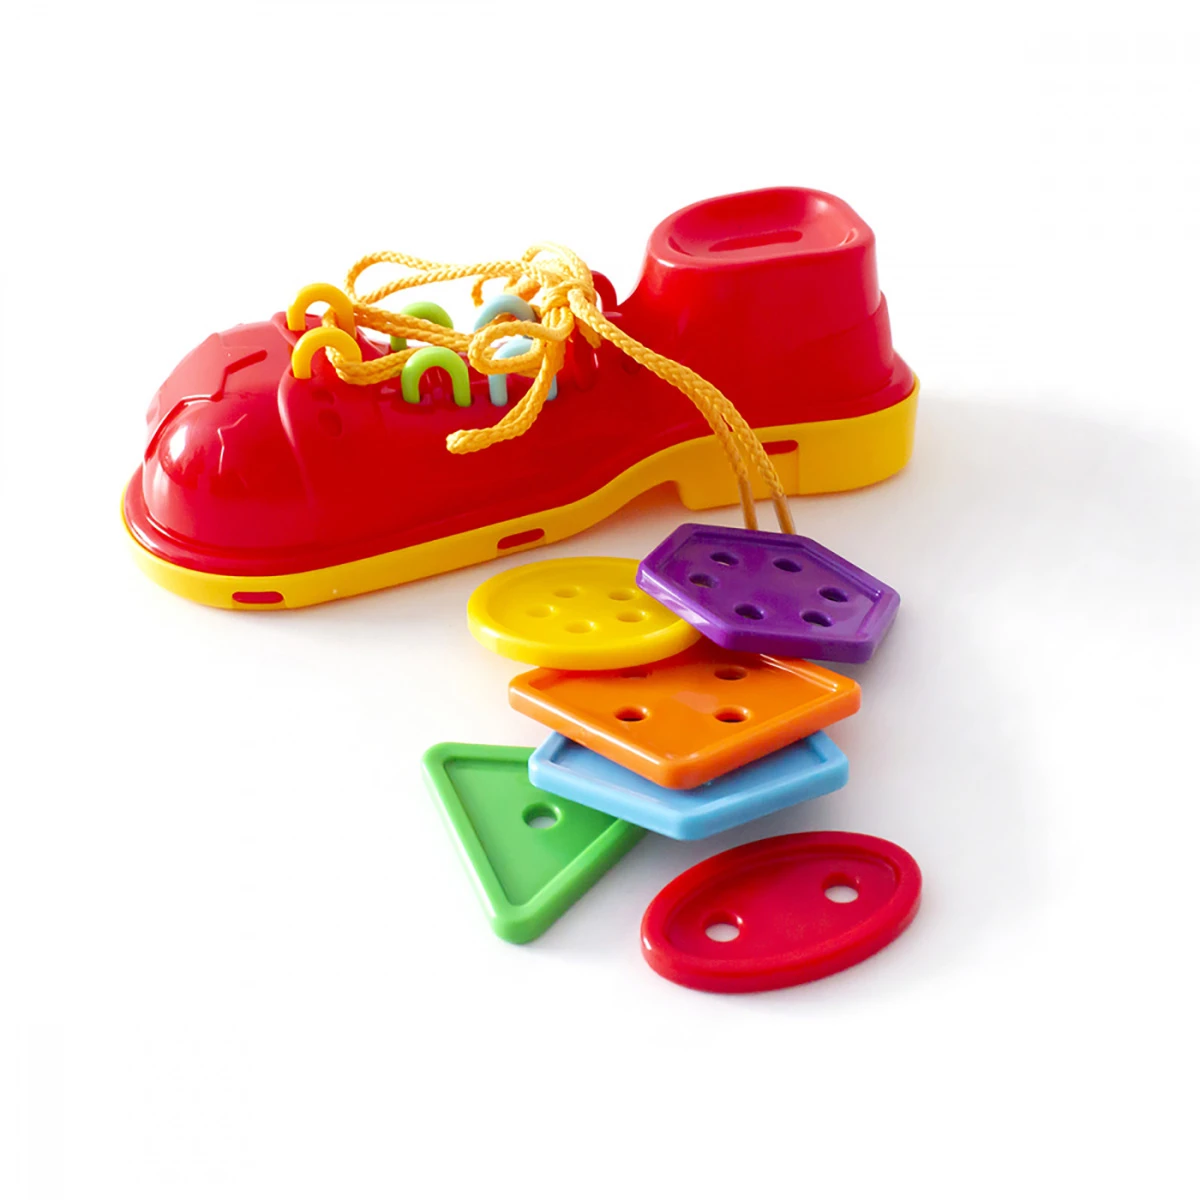 Арт.87114 Развивающий набор "Красный ботинок с пуговками" (уп. пакет)